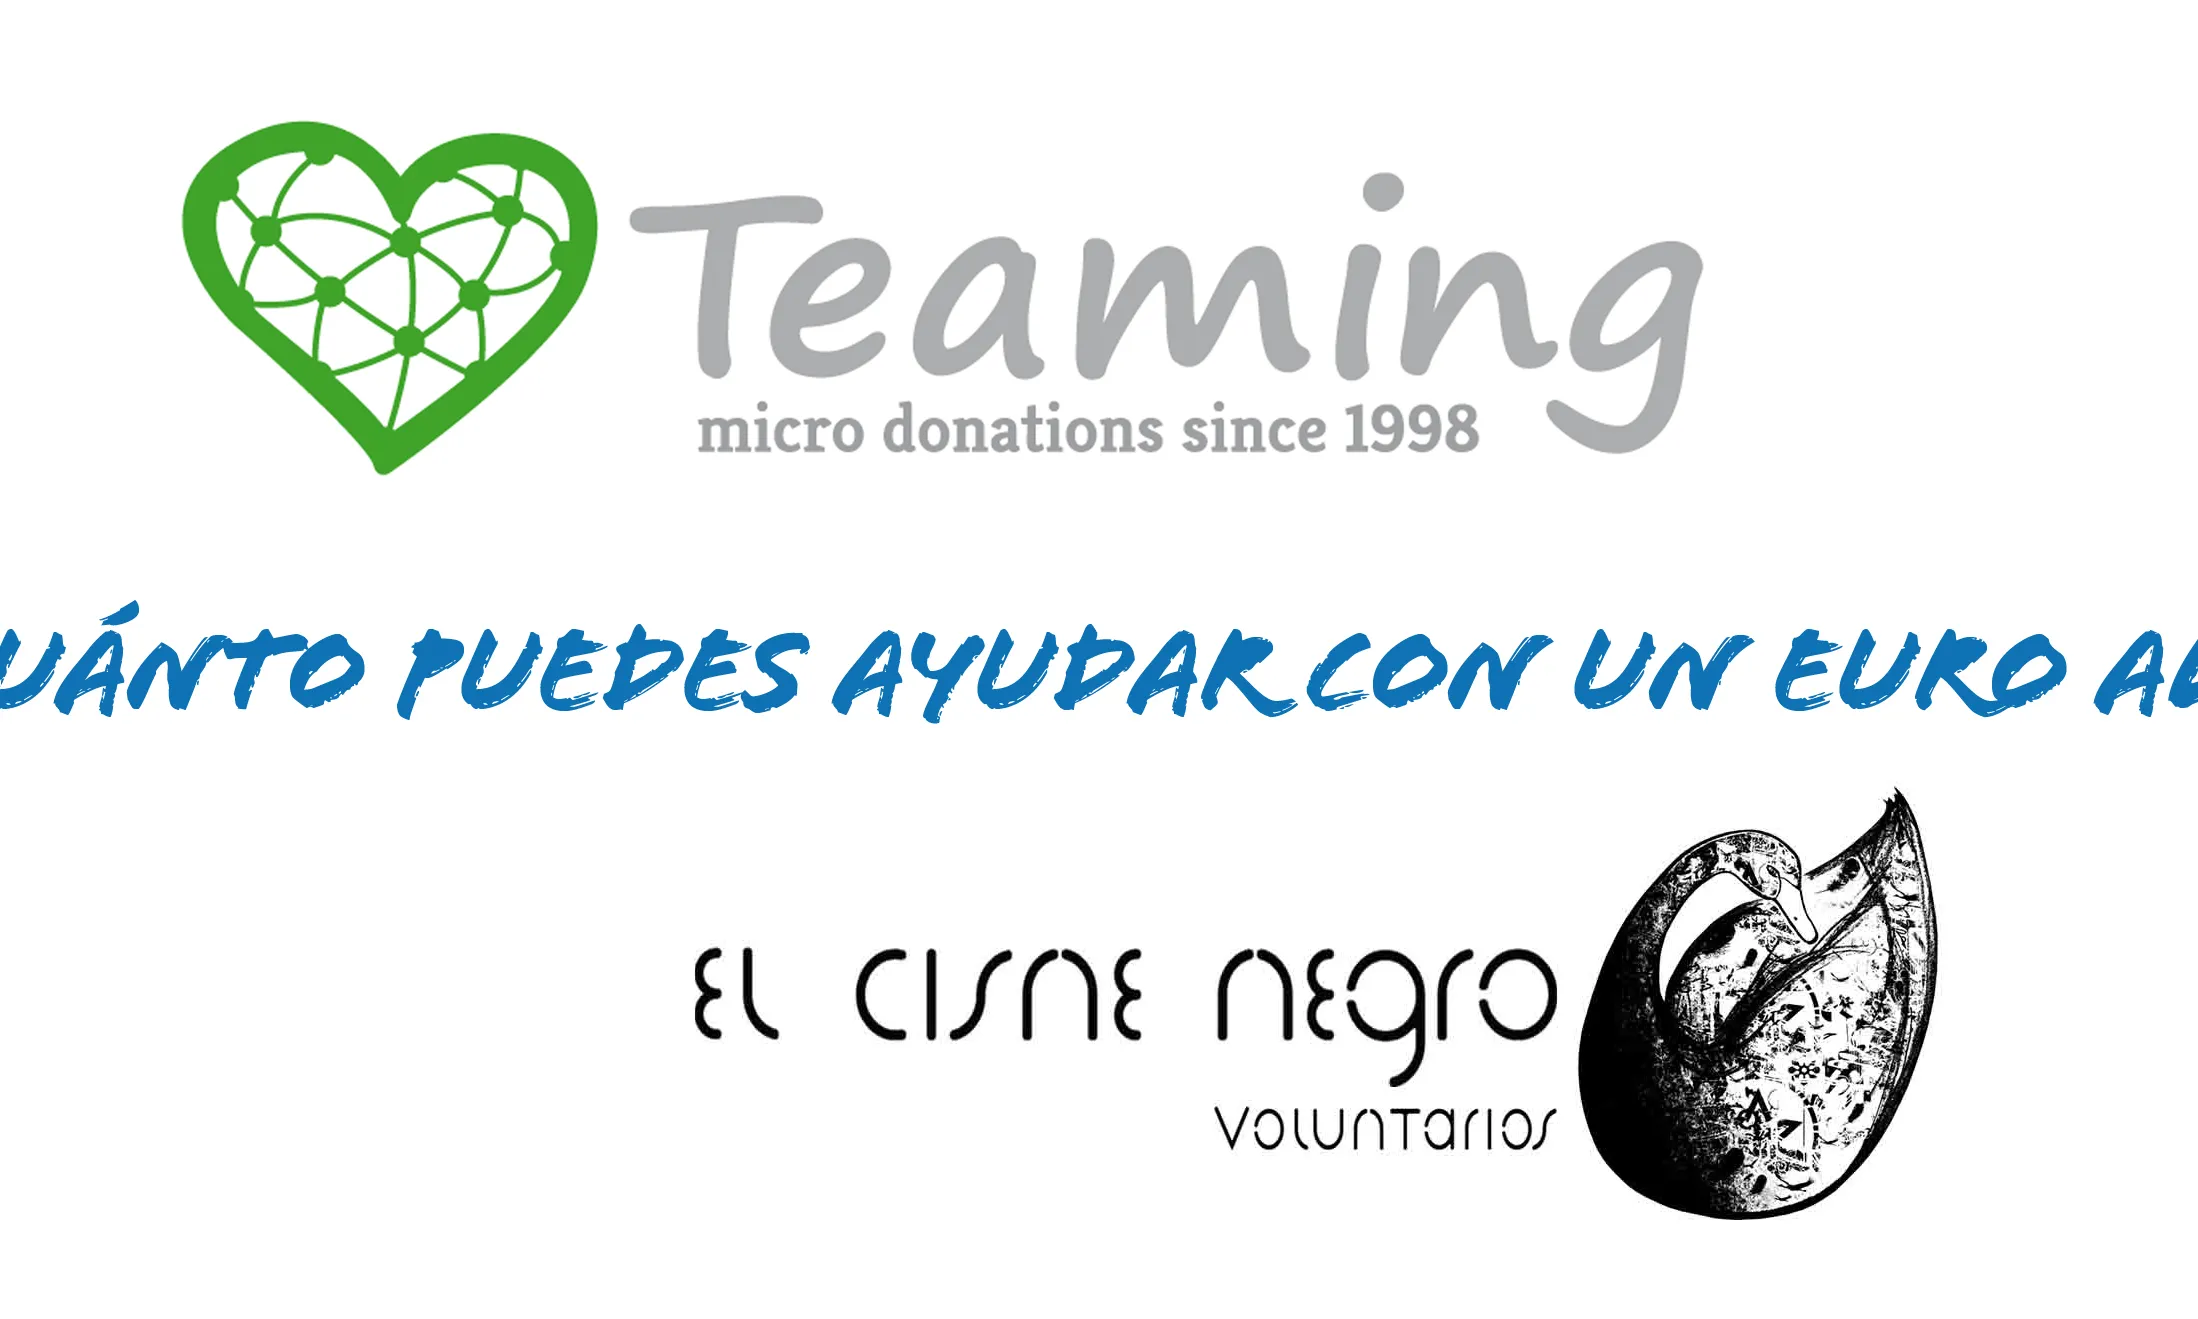 Teaming El Cisne negro voluntarios